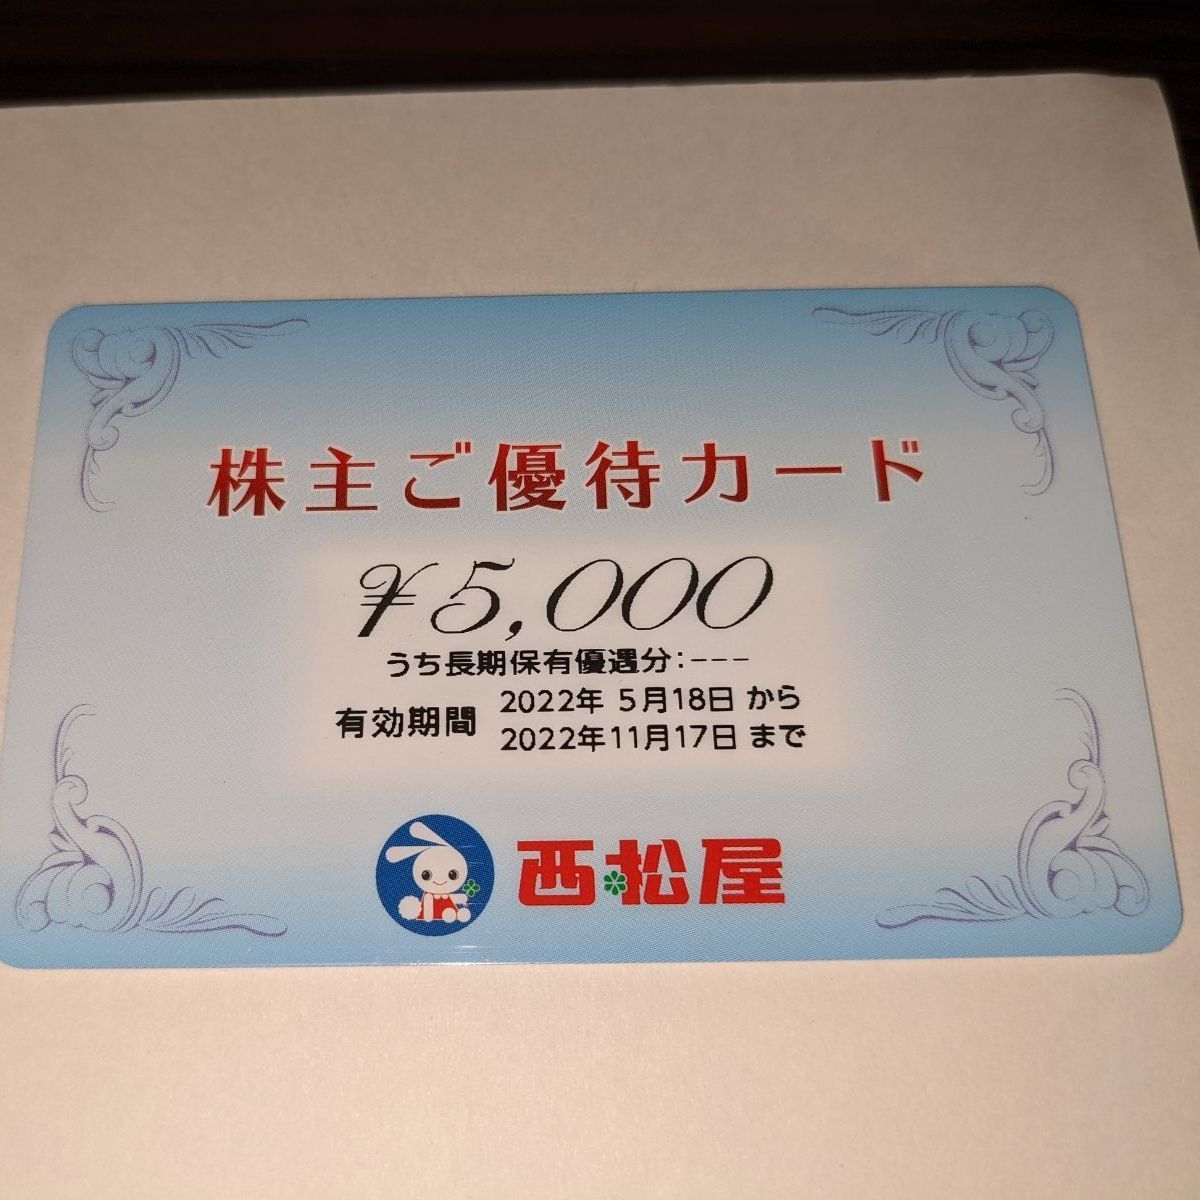 西松屋 株主優待5000円分